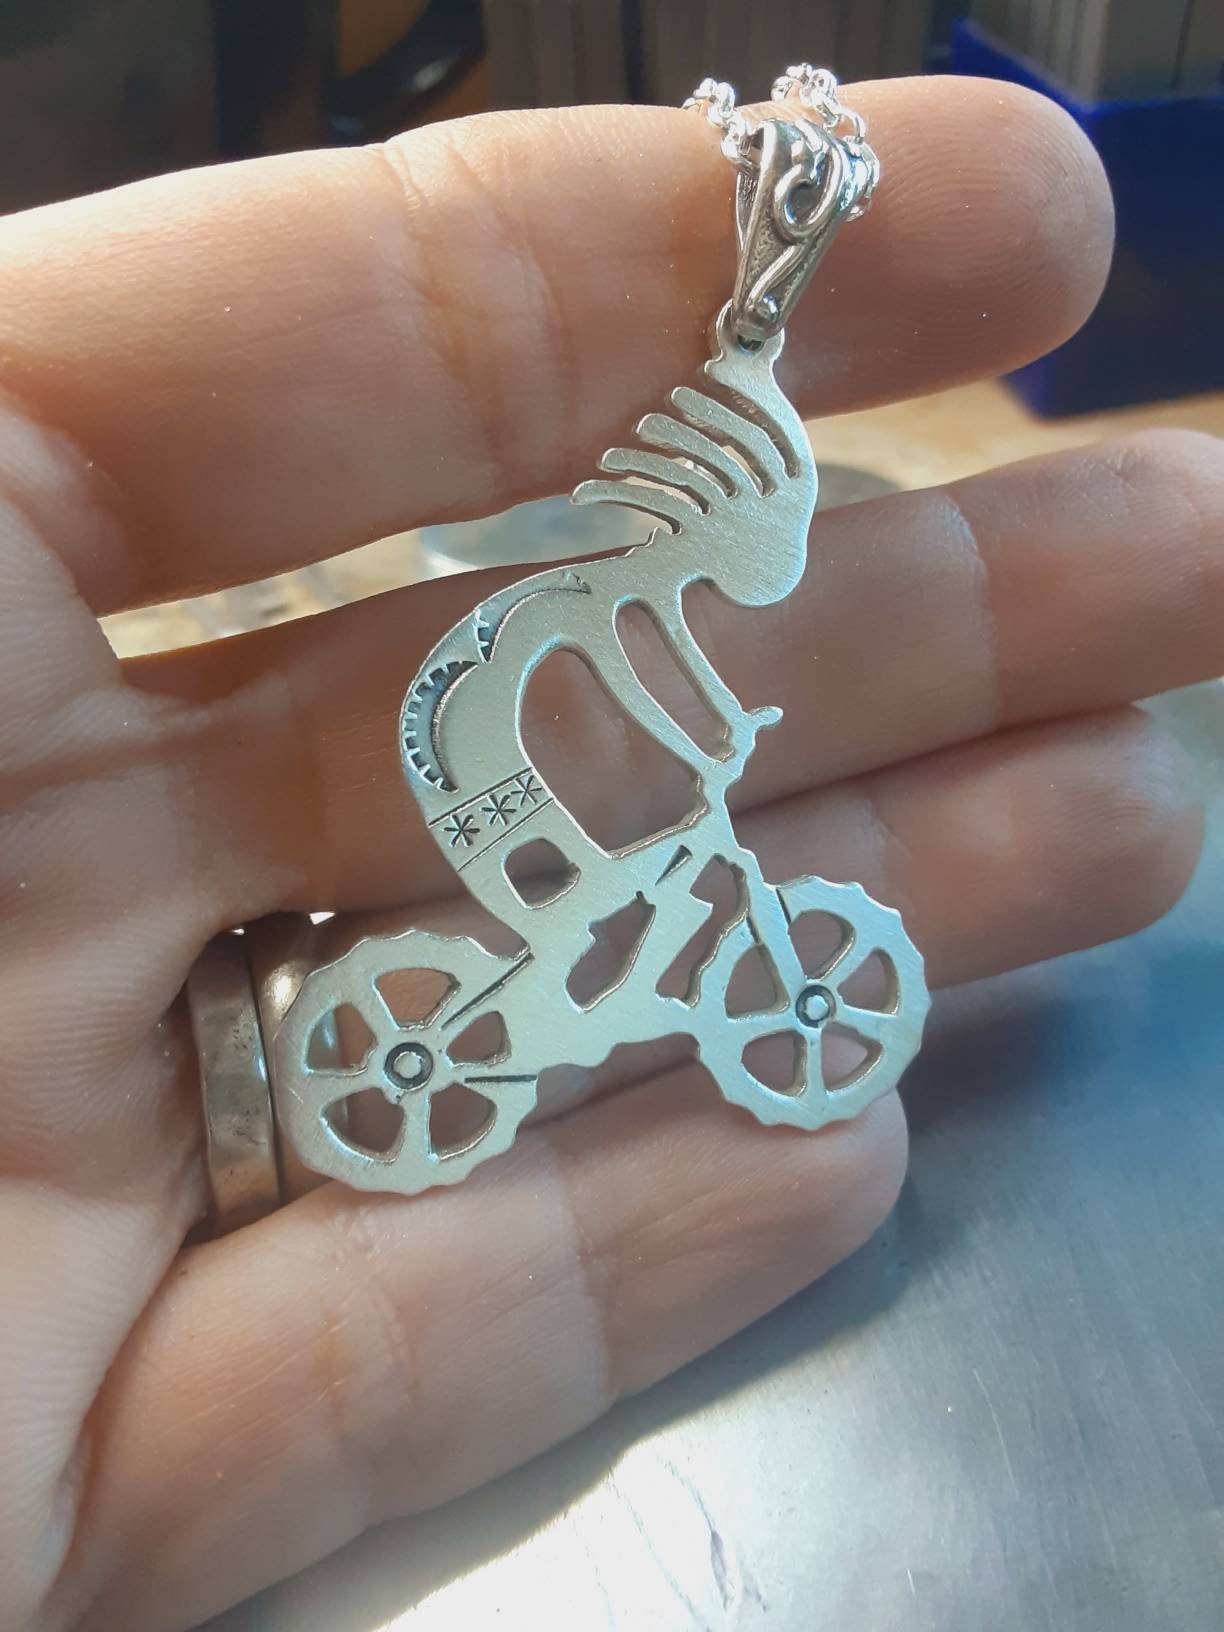 Kokopelli on mountain bike sterling silver necklace